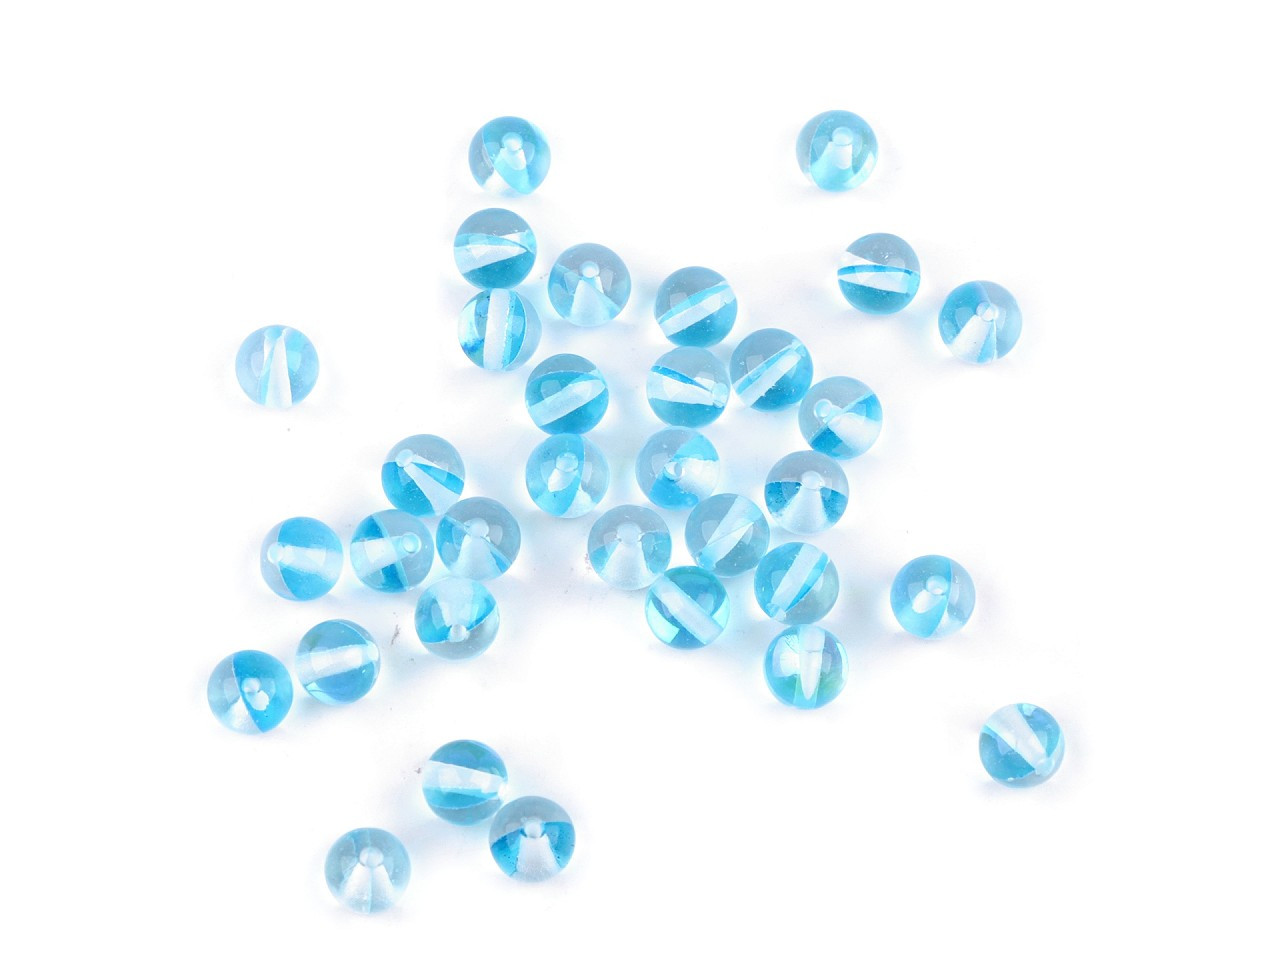 Skleněné korálky s AB efektem Ø6 mm, barva 6 modrá azurová